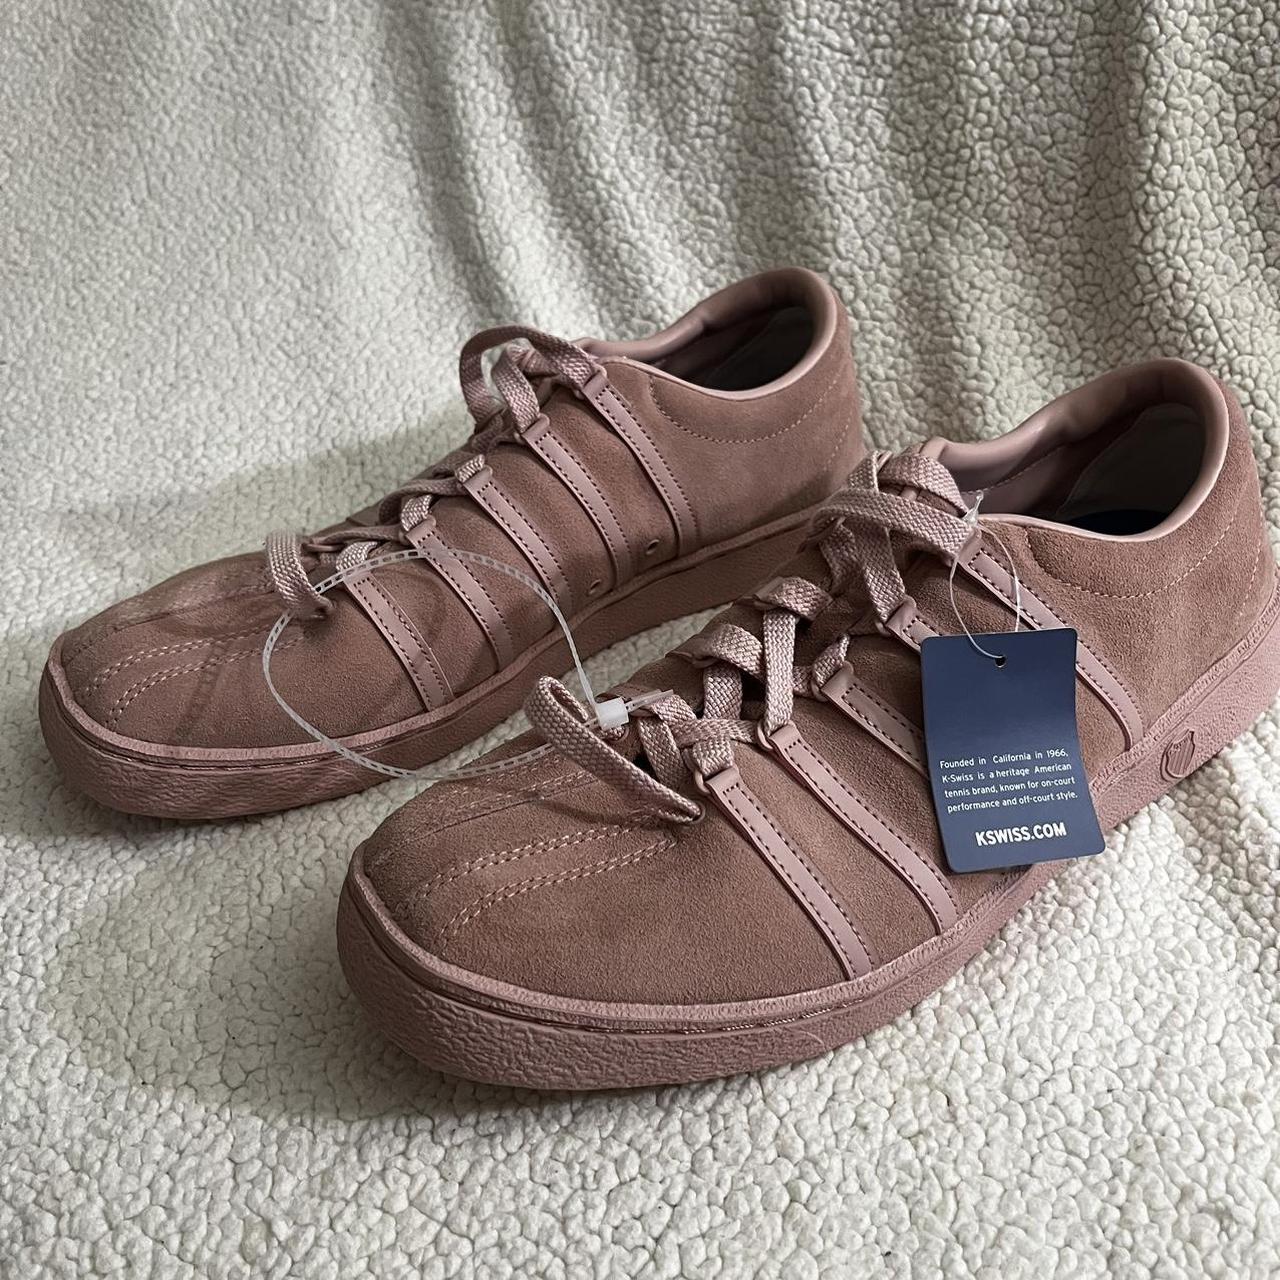 K-SWISS Salmon Pink Suede Sneakers Men size 12 Brand... - Depop